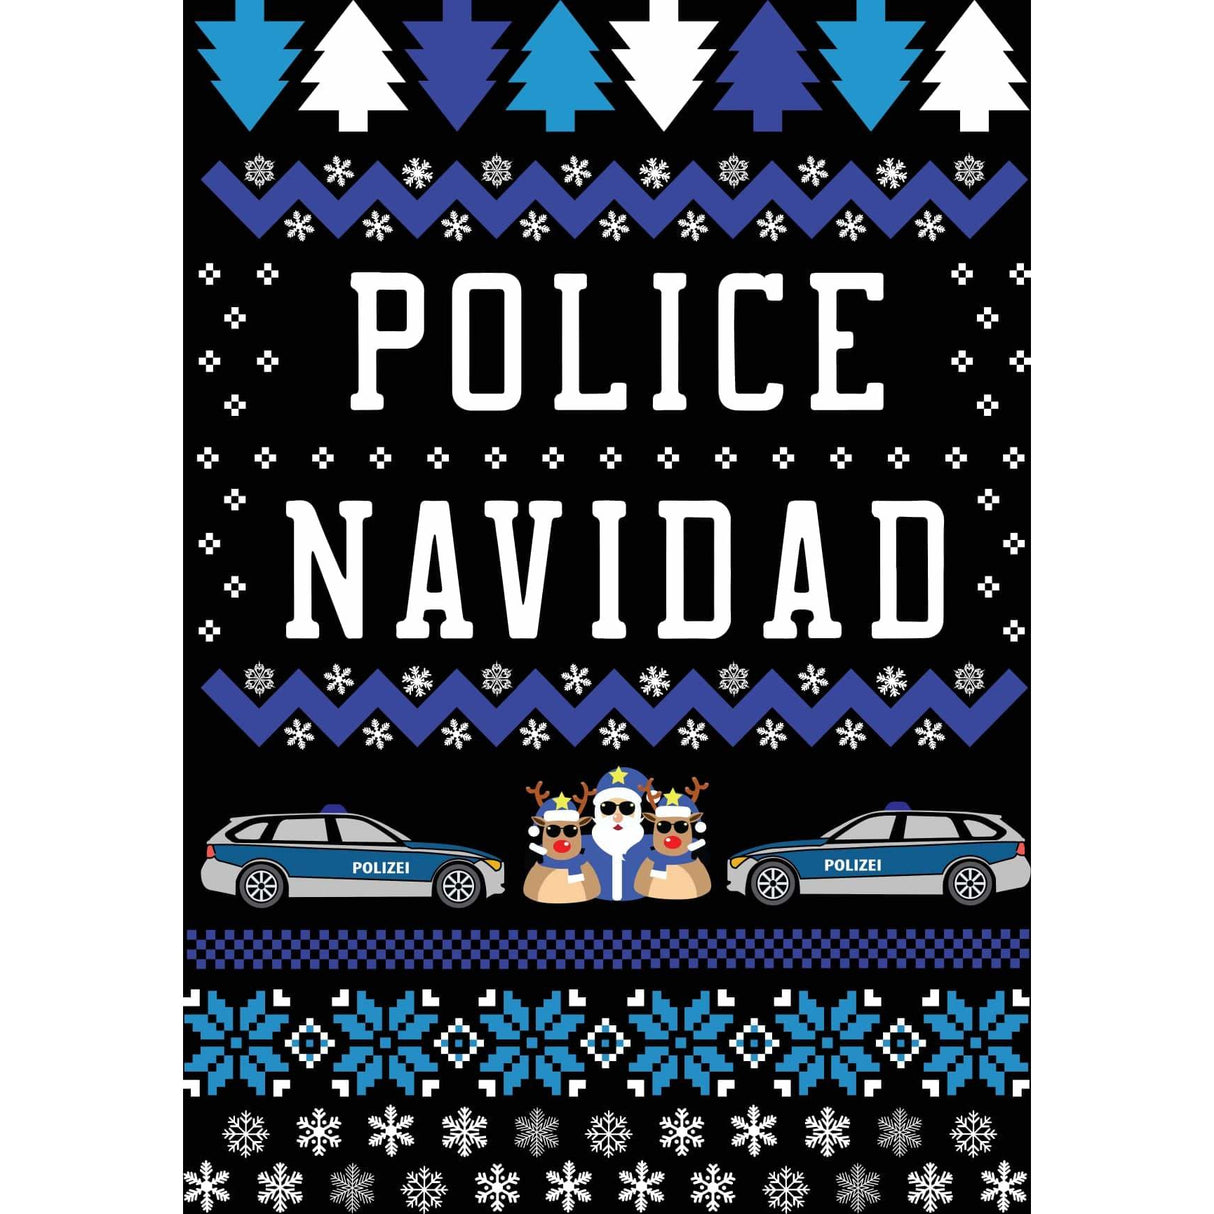 Police Navidad blau 5er Set Weihnachtskarten - Polizeimemesshop